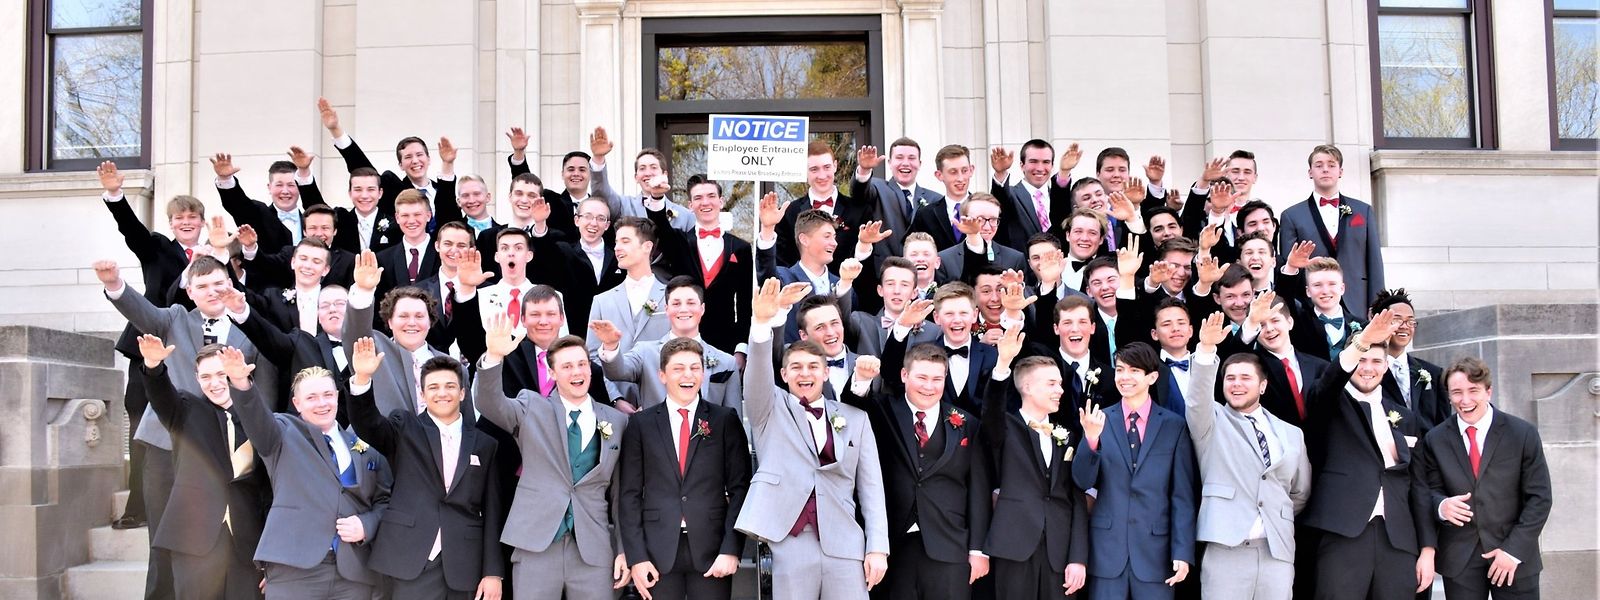 Fast alle männlichen Schüler dieser amerikanischen Abschlussklasse 2019 amüsieren sich über den Hitlergruß. Außer Jordan Blue (hinten rechts).